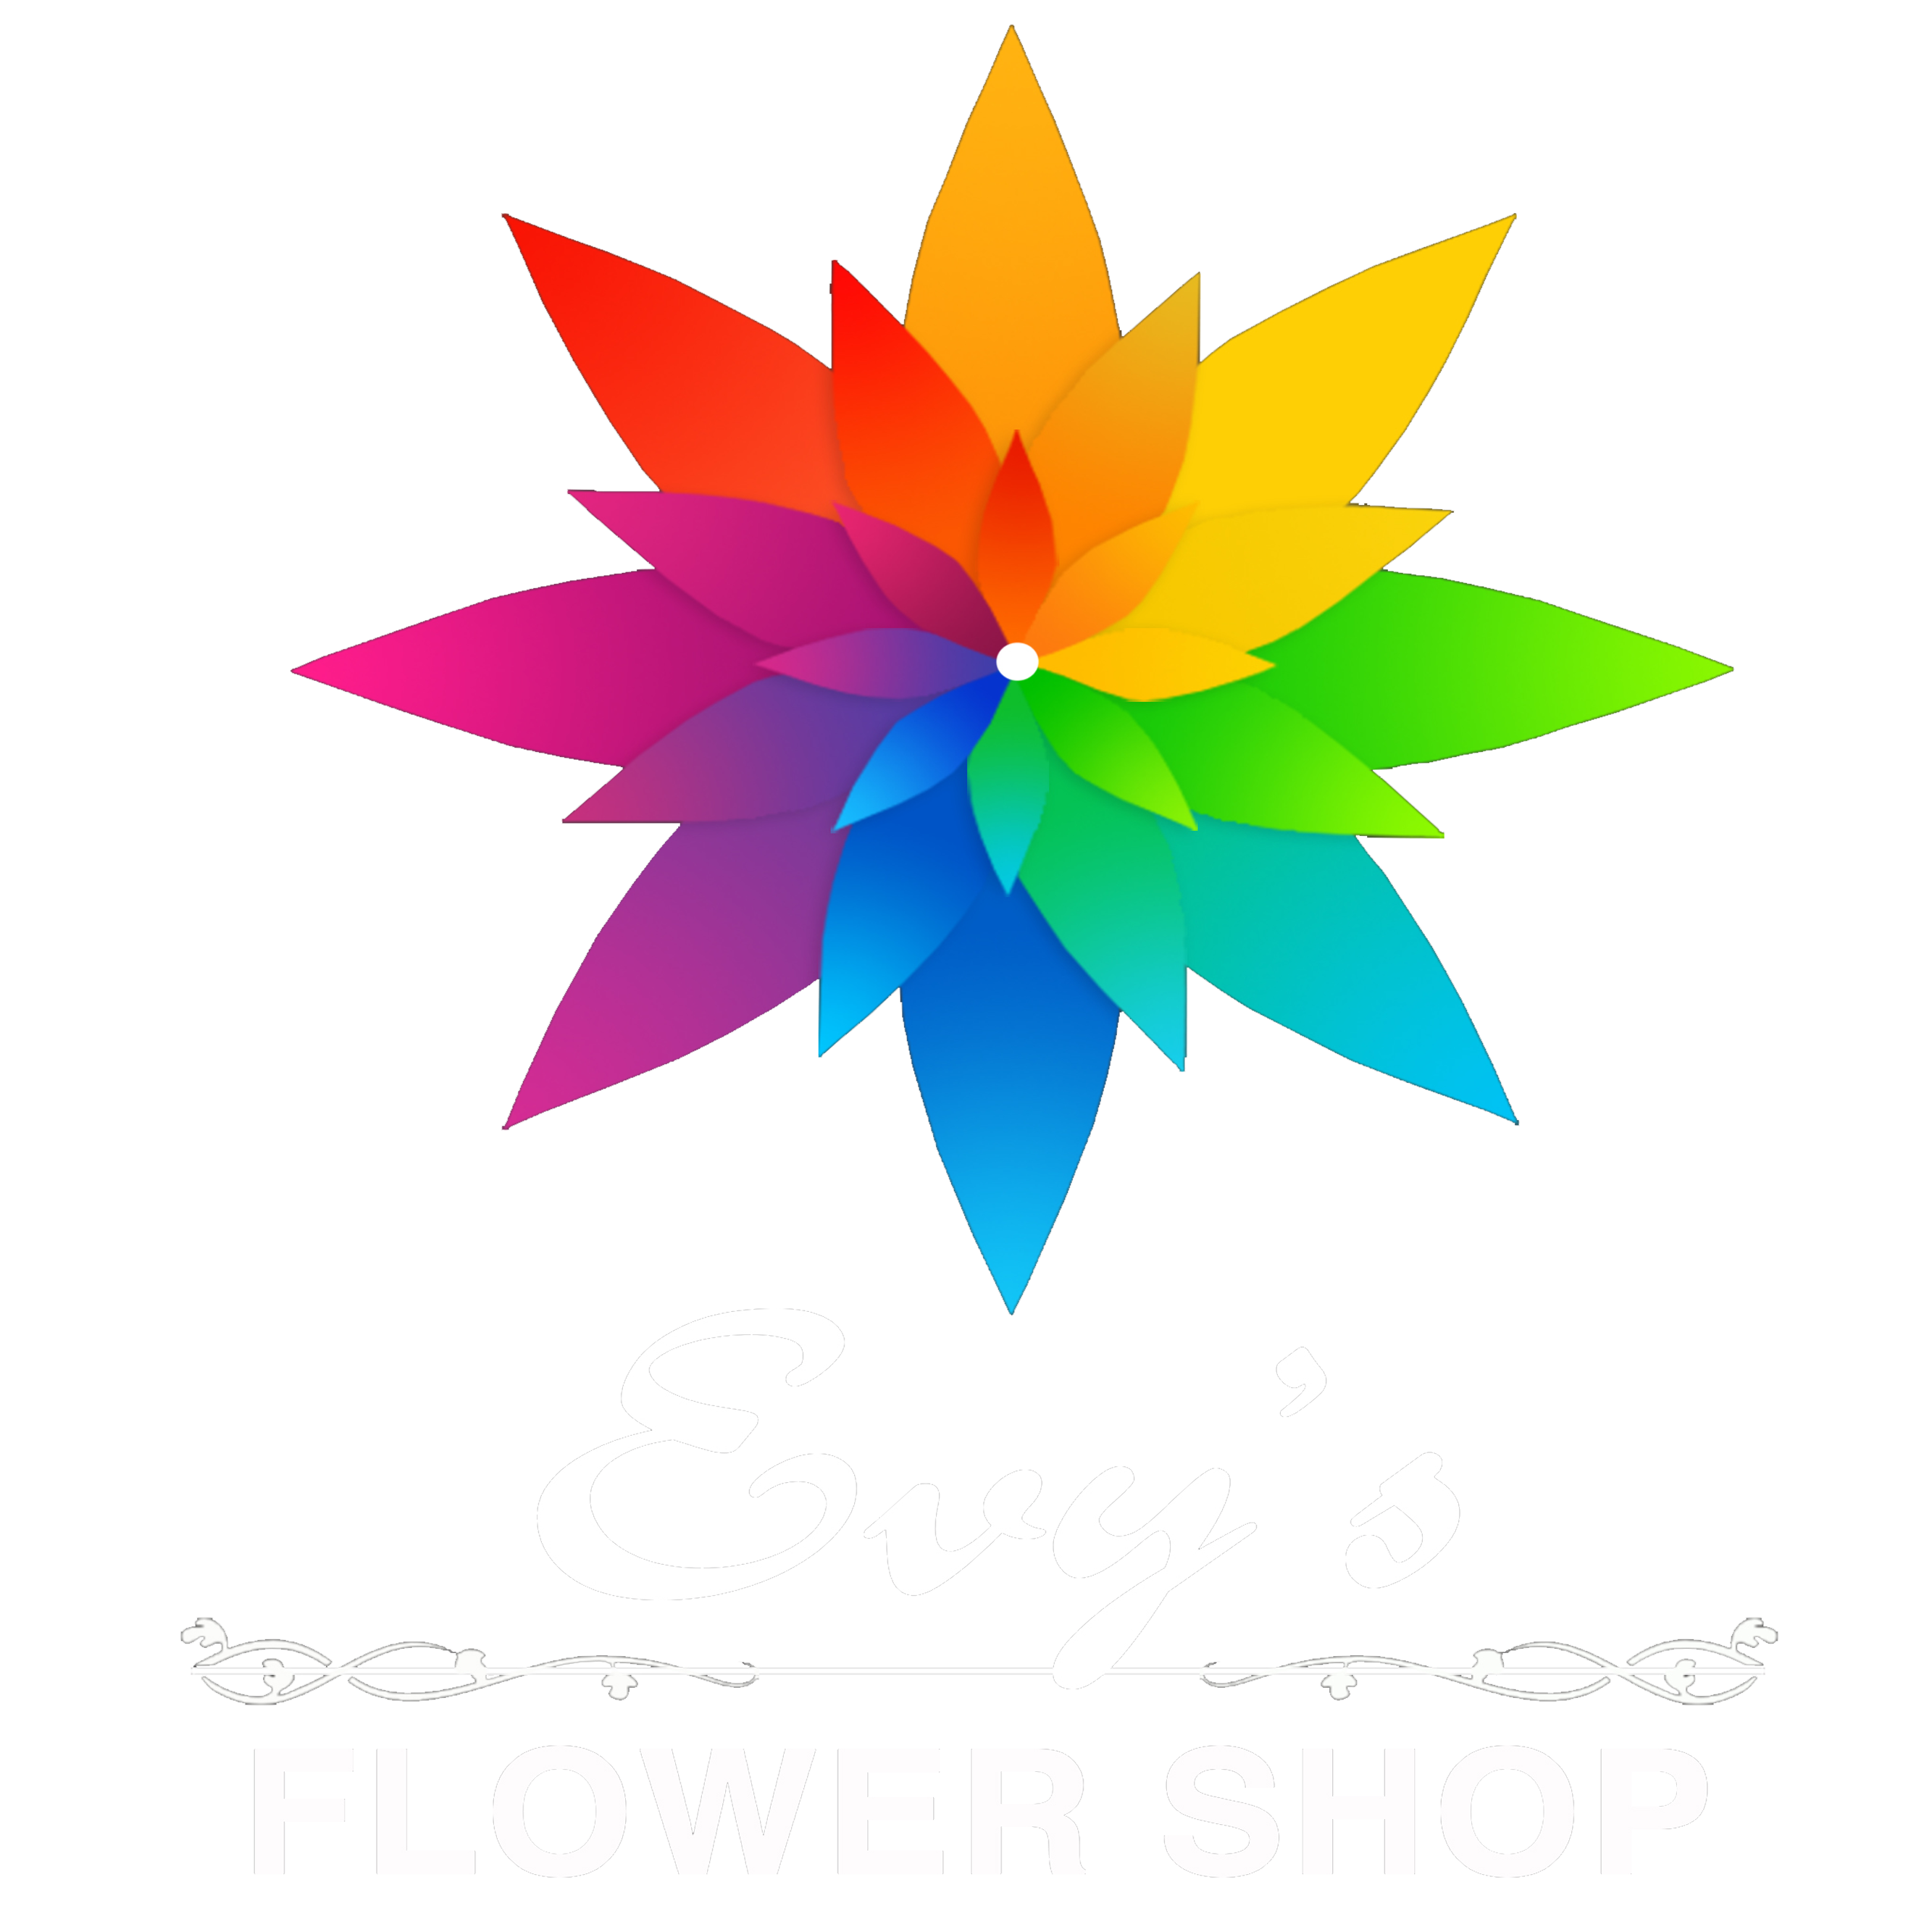 shop clipart floral shop